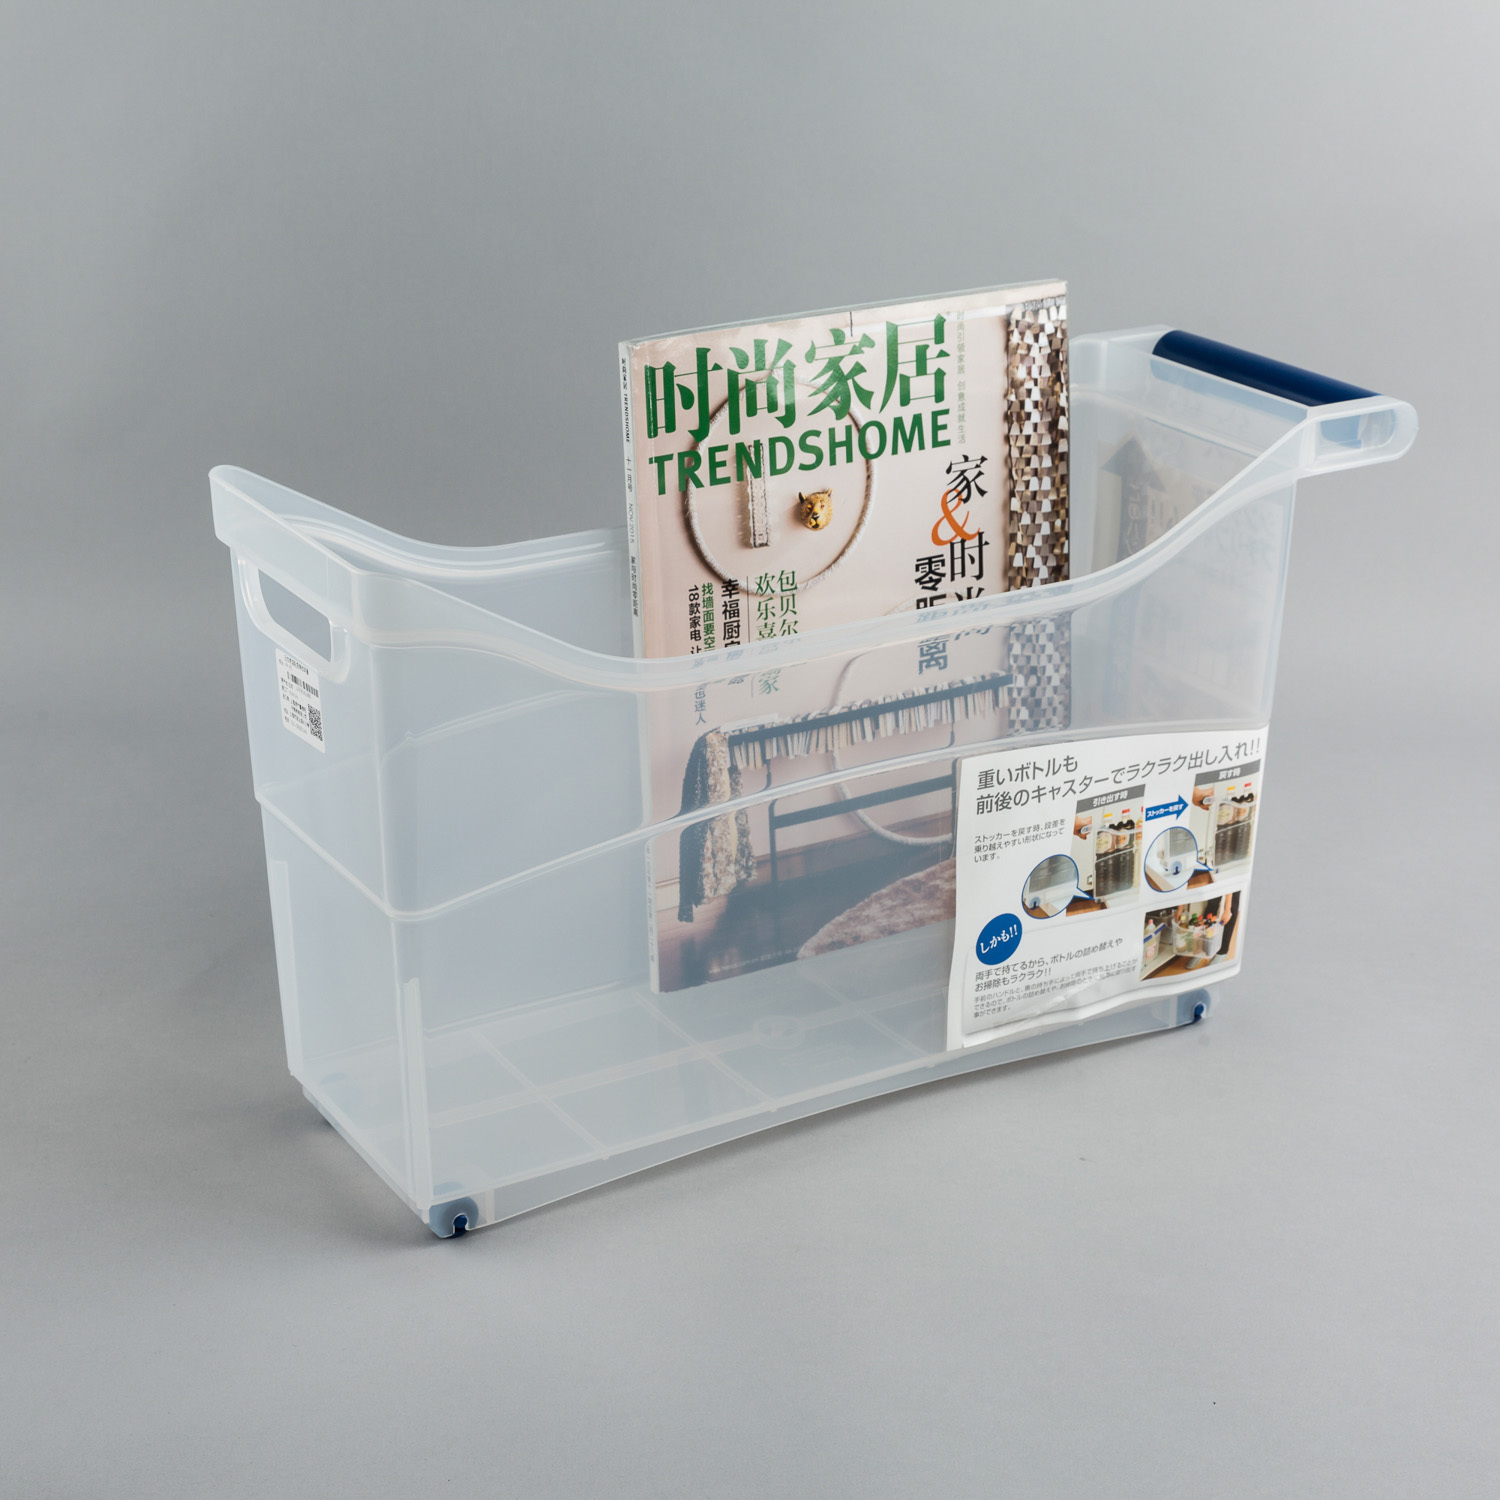 日本原产inomata带滚轮厨房收纳盒收纳箱储物箱整理箱 透明